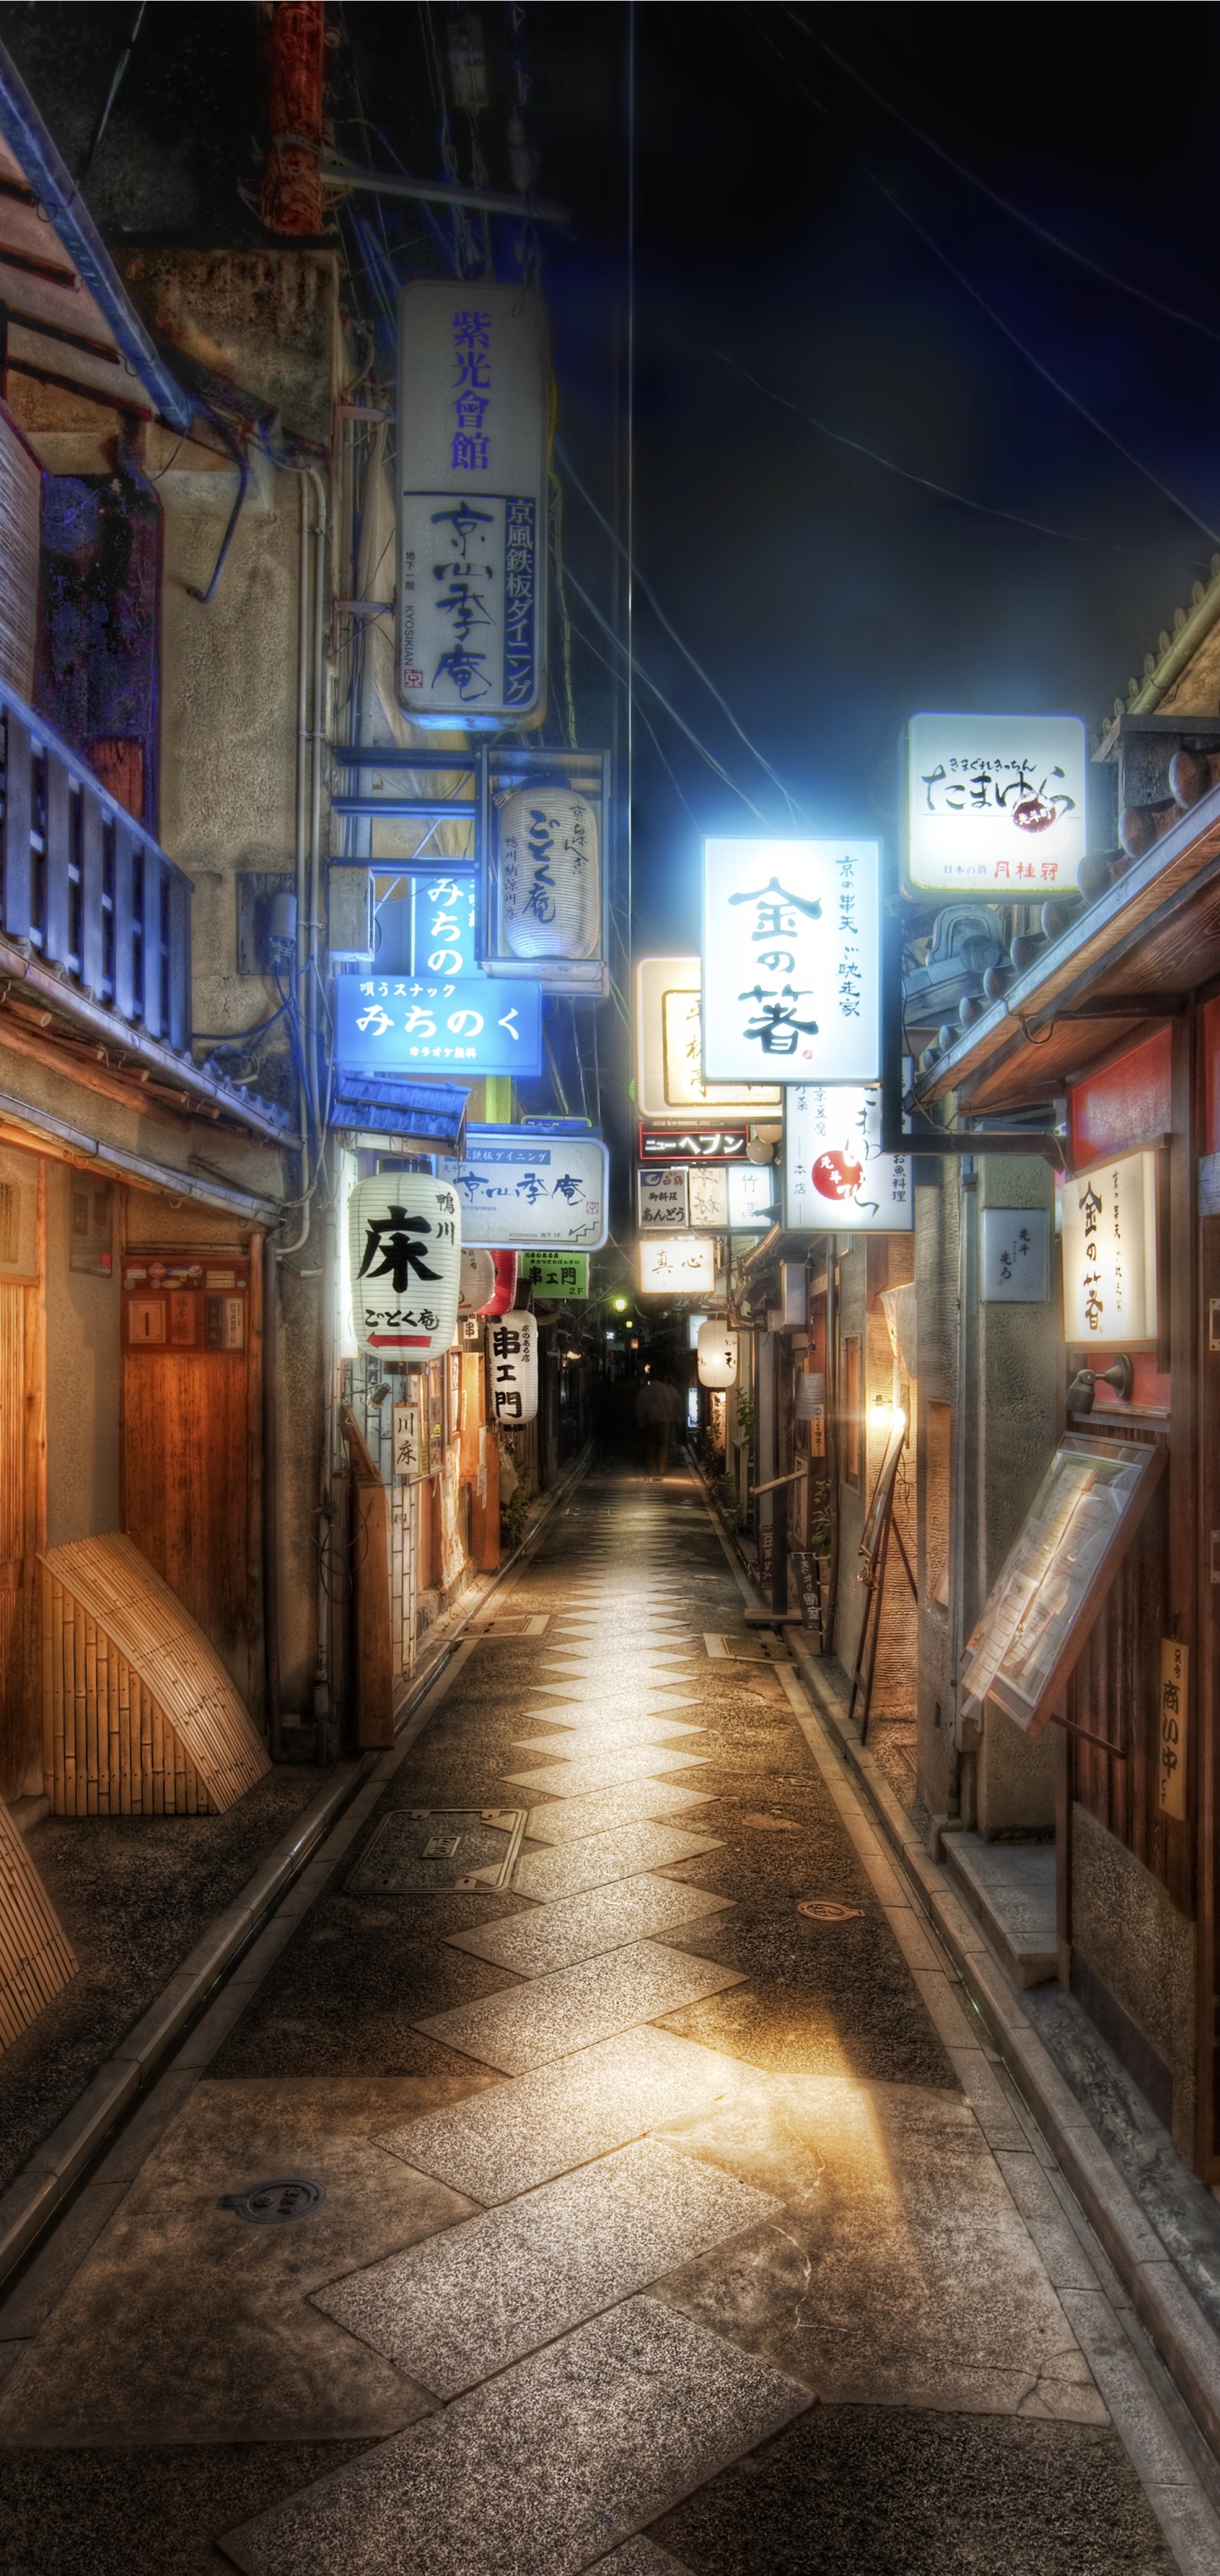 Скачать обои бесплатно Города, Ночь, Аллея, Япония, Киото, Сделано Человеком картинка на рабочий стол ПК